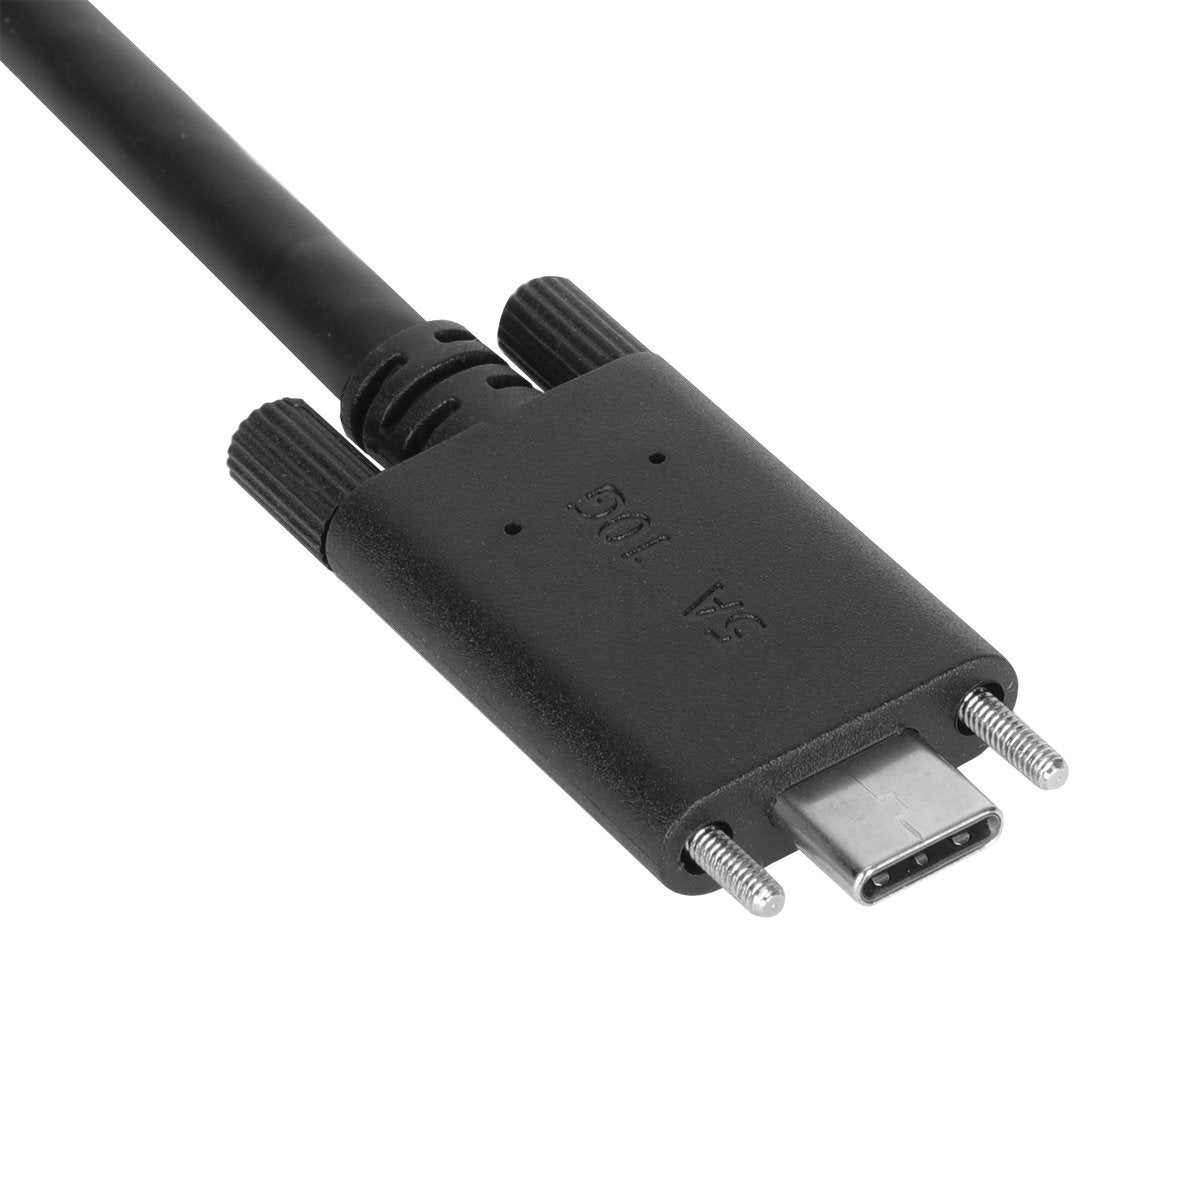 CABLE USB 3.0 (TIPO C) A USB 3.0 TIPO (TIPO A) DE 3 PIES / 1 METRO ARG –  Laptop Center